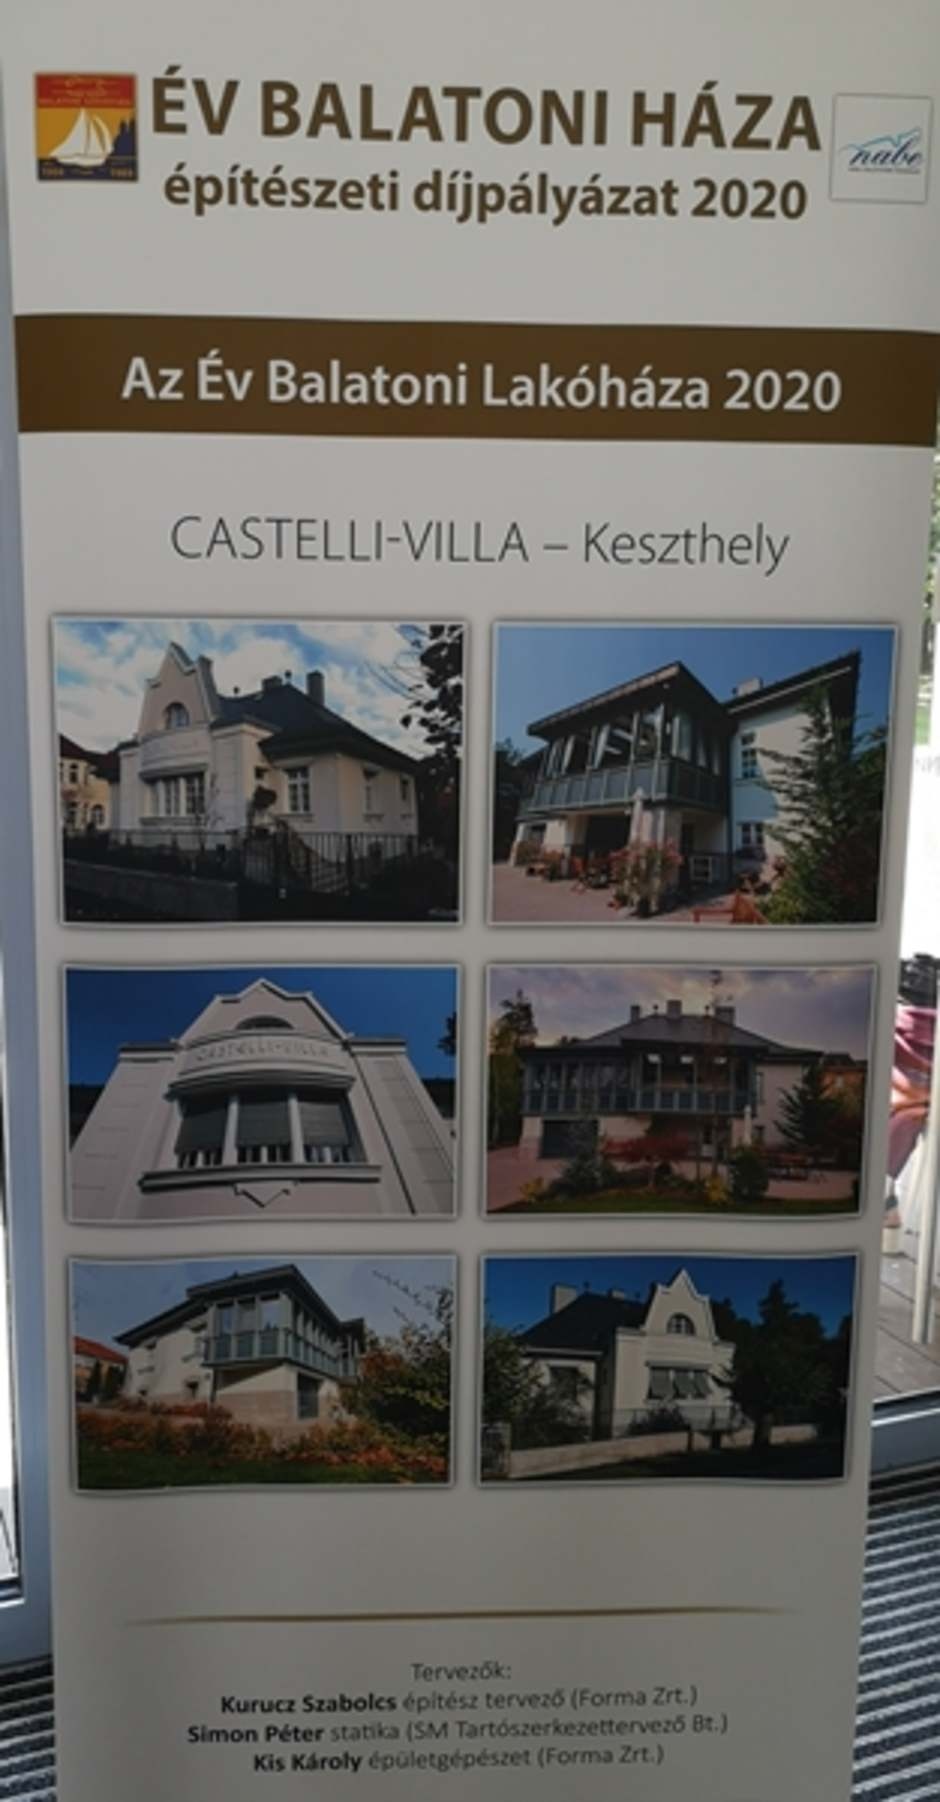 Castelli villa, Keszthely, terv: Kurucz Szabolcs